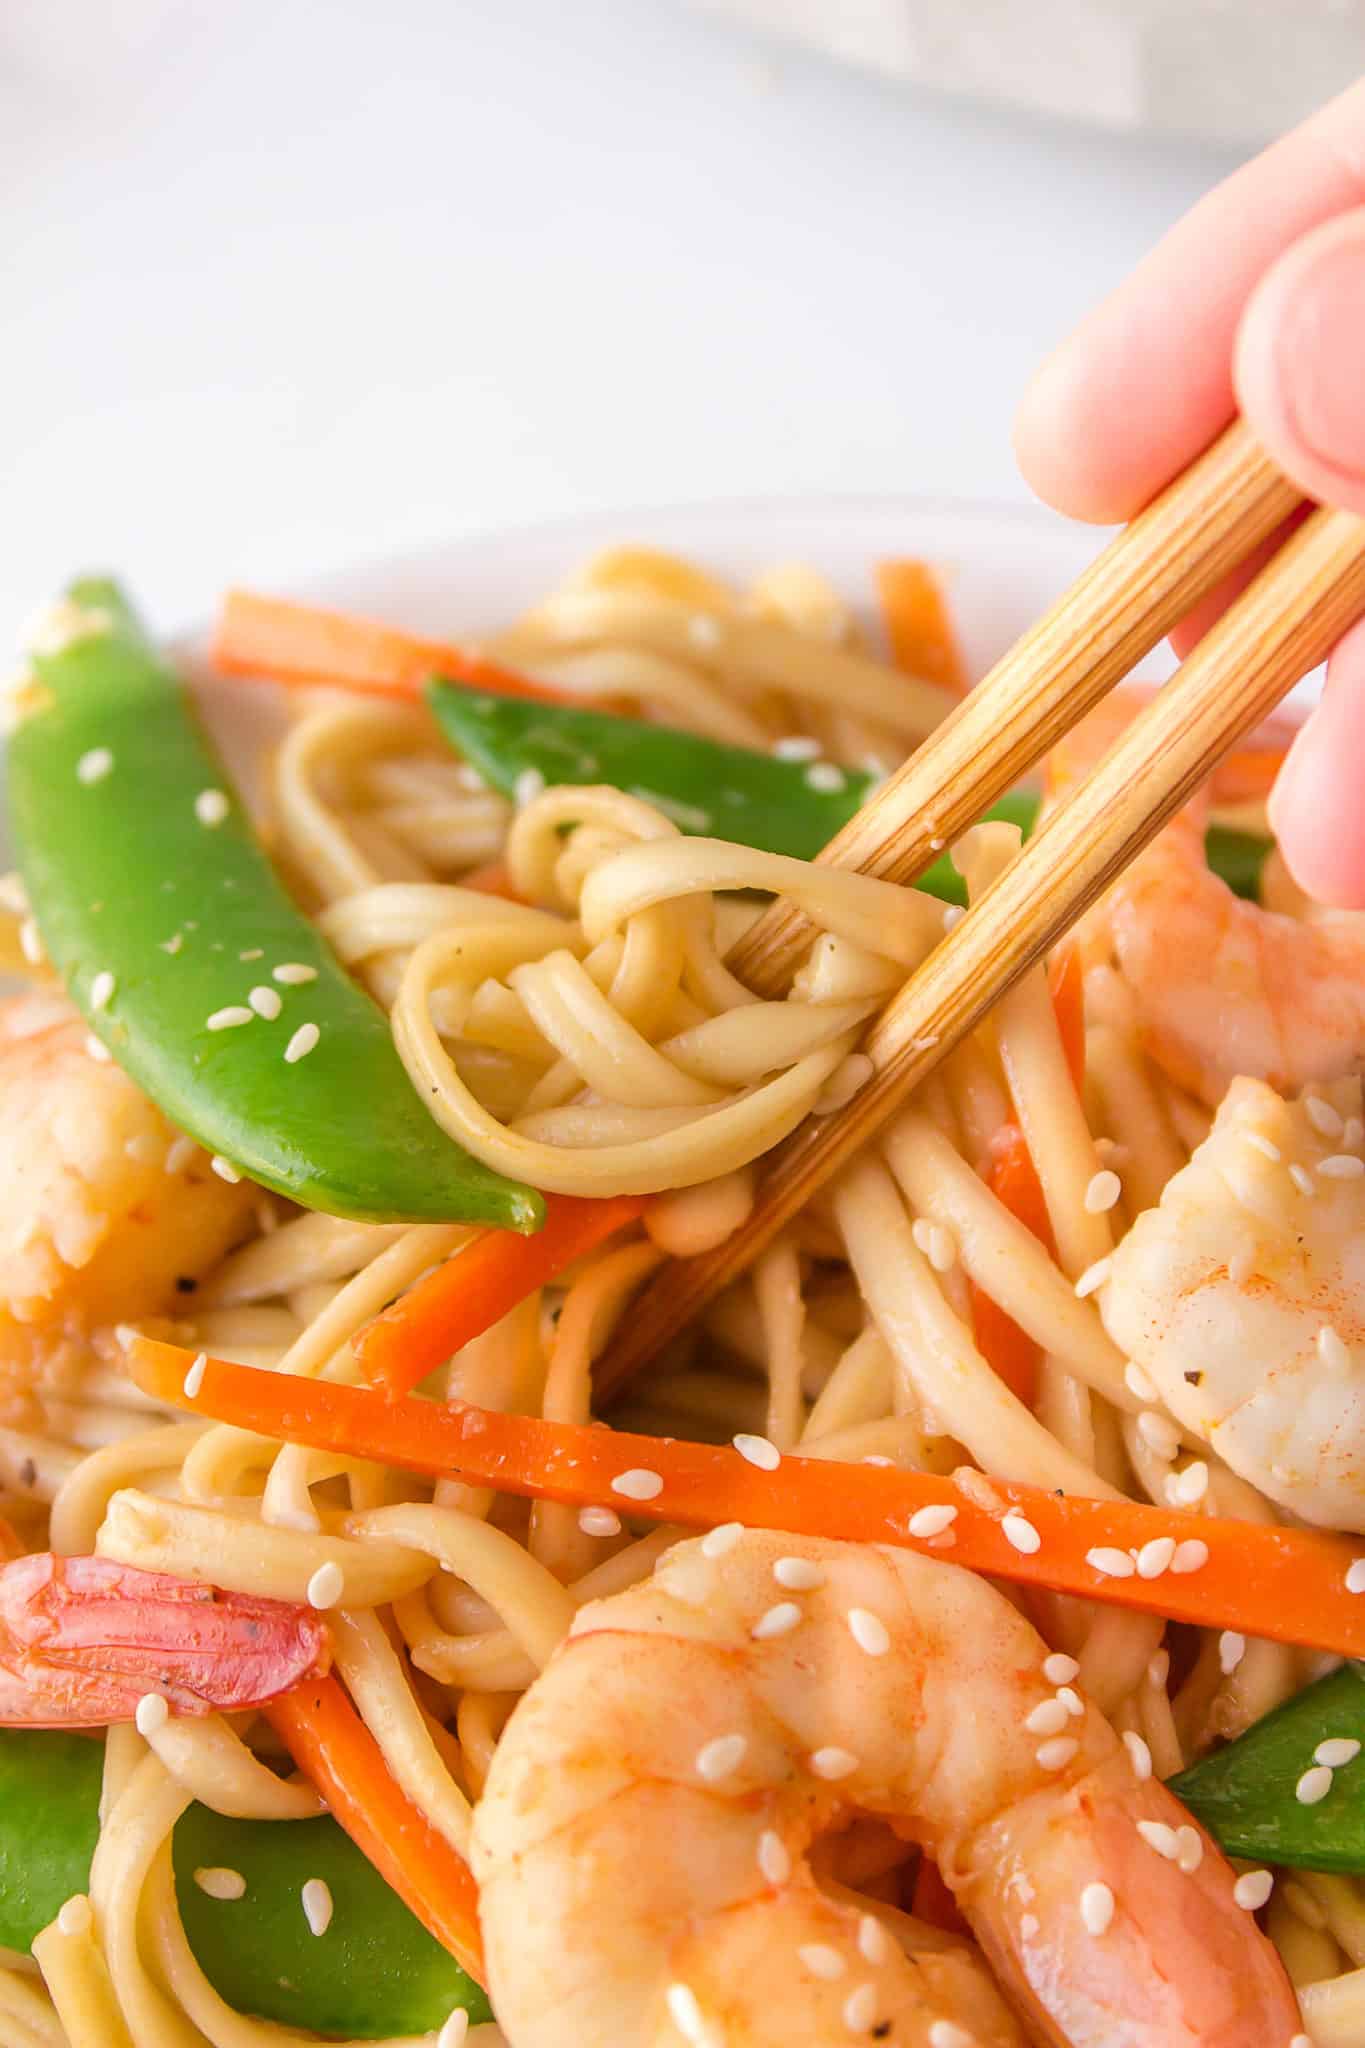 Chopsticks picking up shrimp udon noodles coated in sauce.